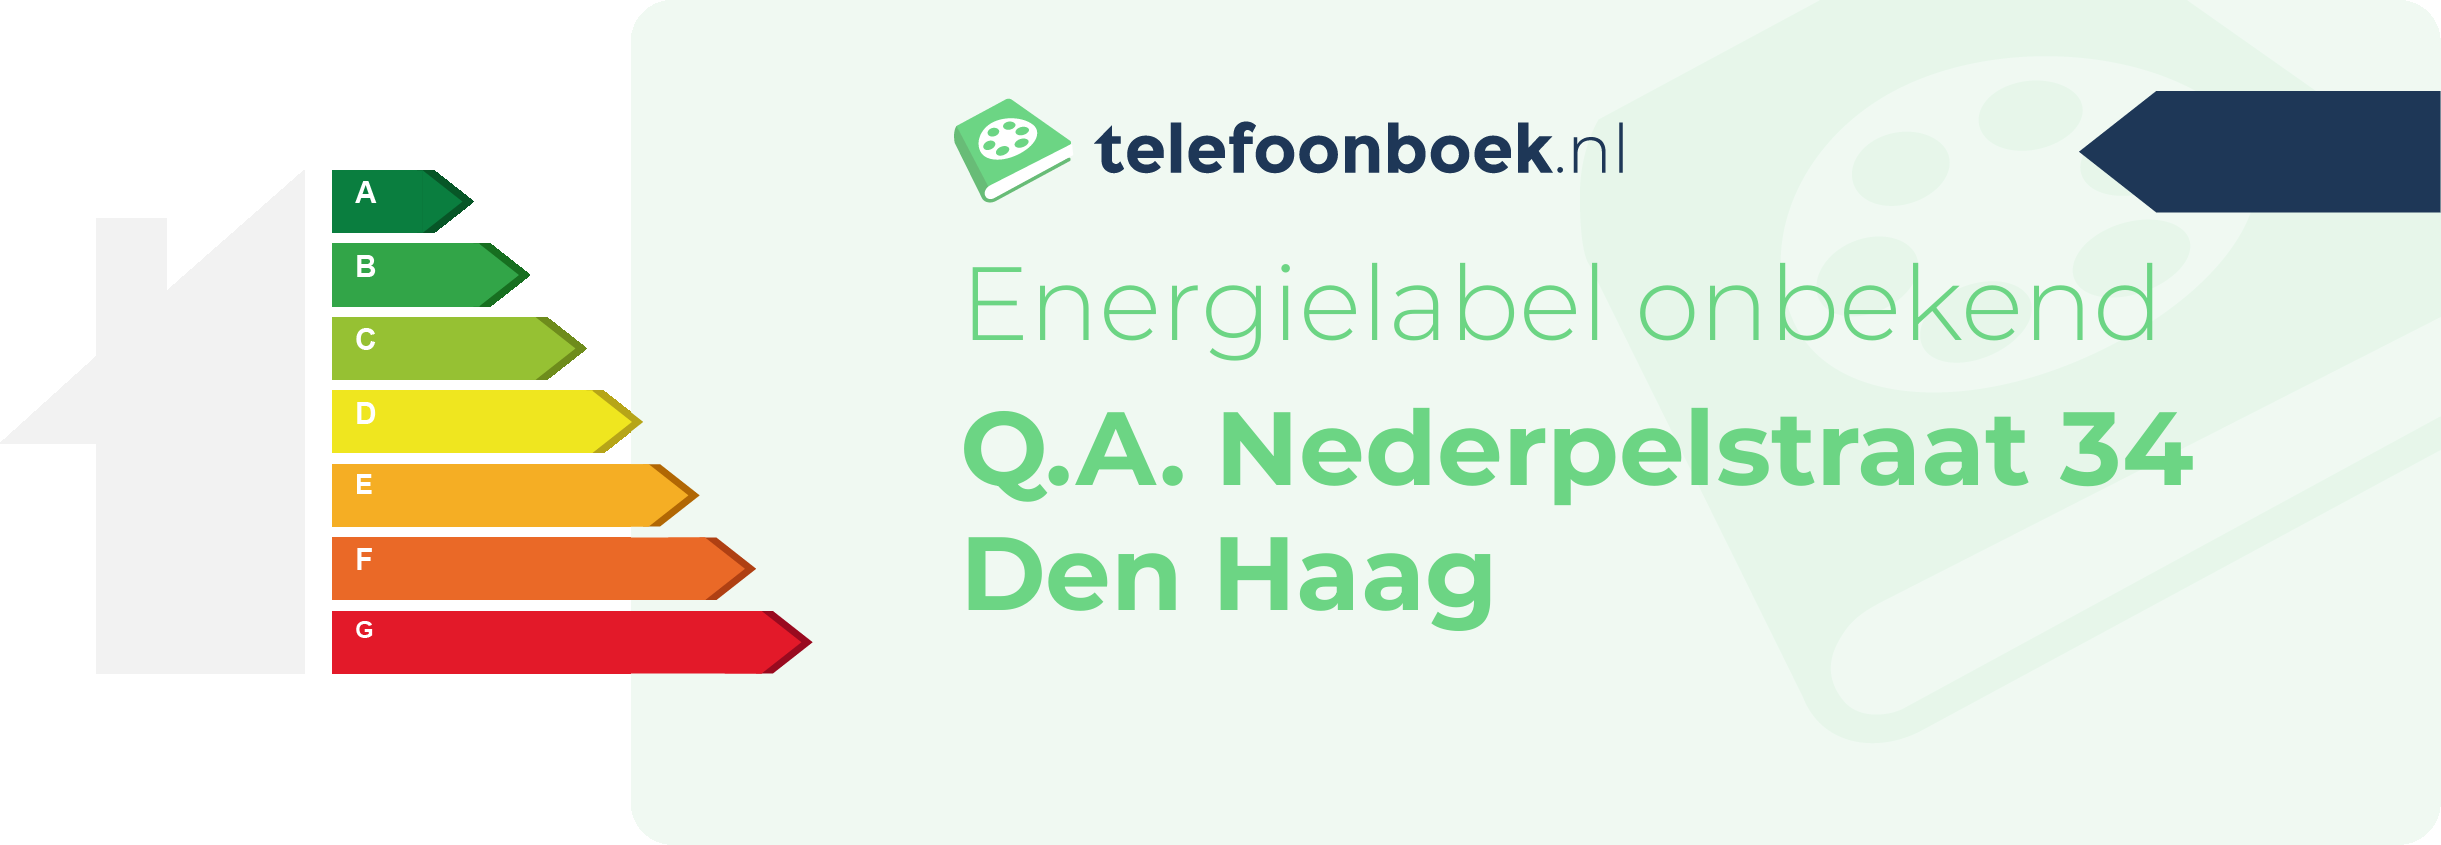 Energielabel Q.A. Nederpelstraat 34 Den Haag